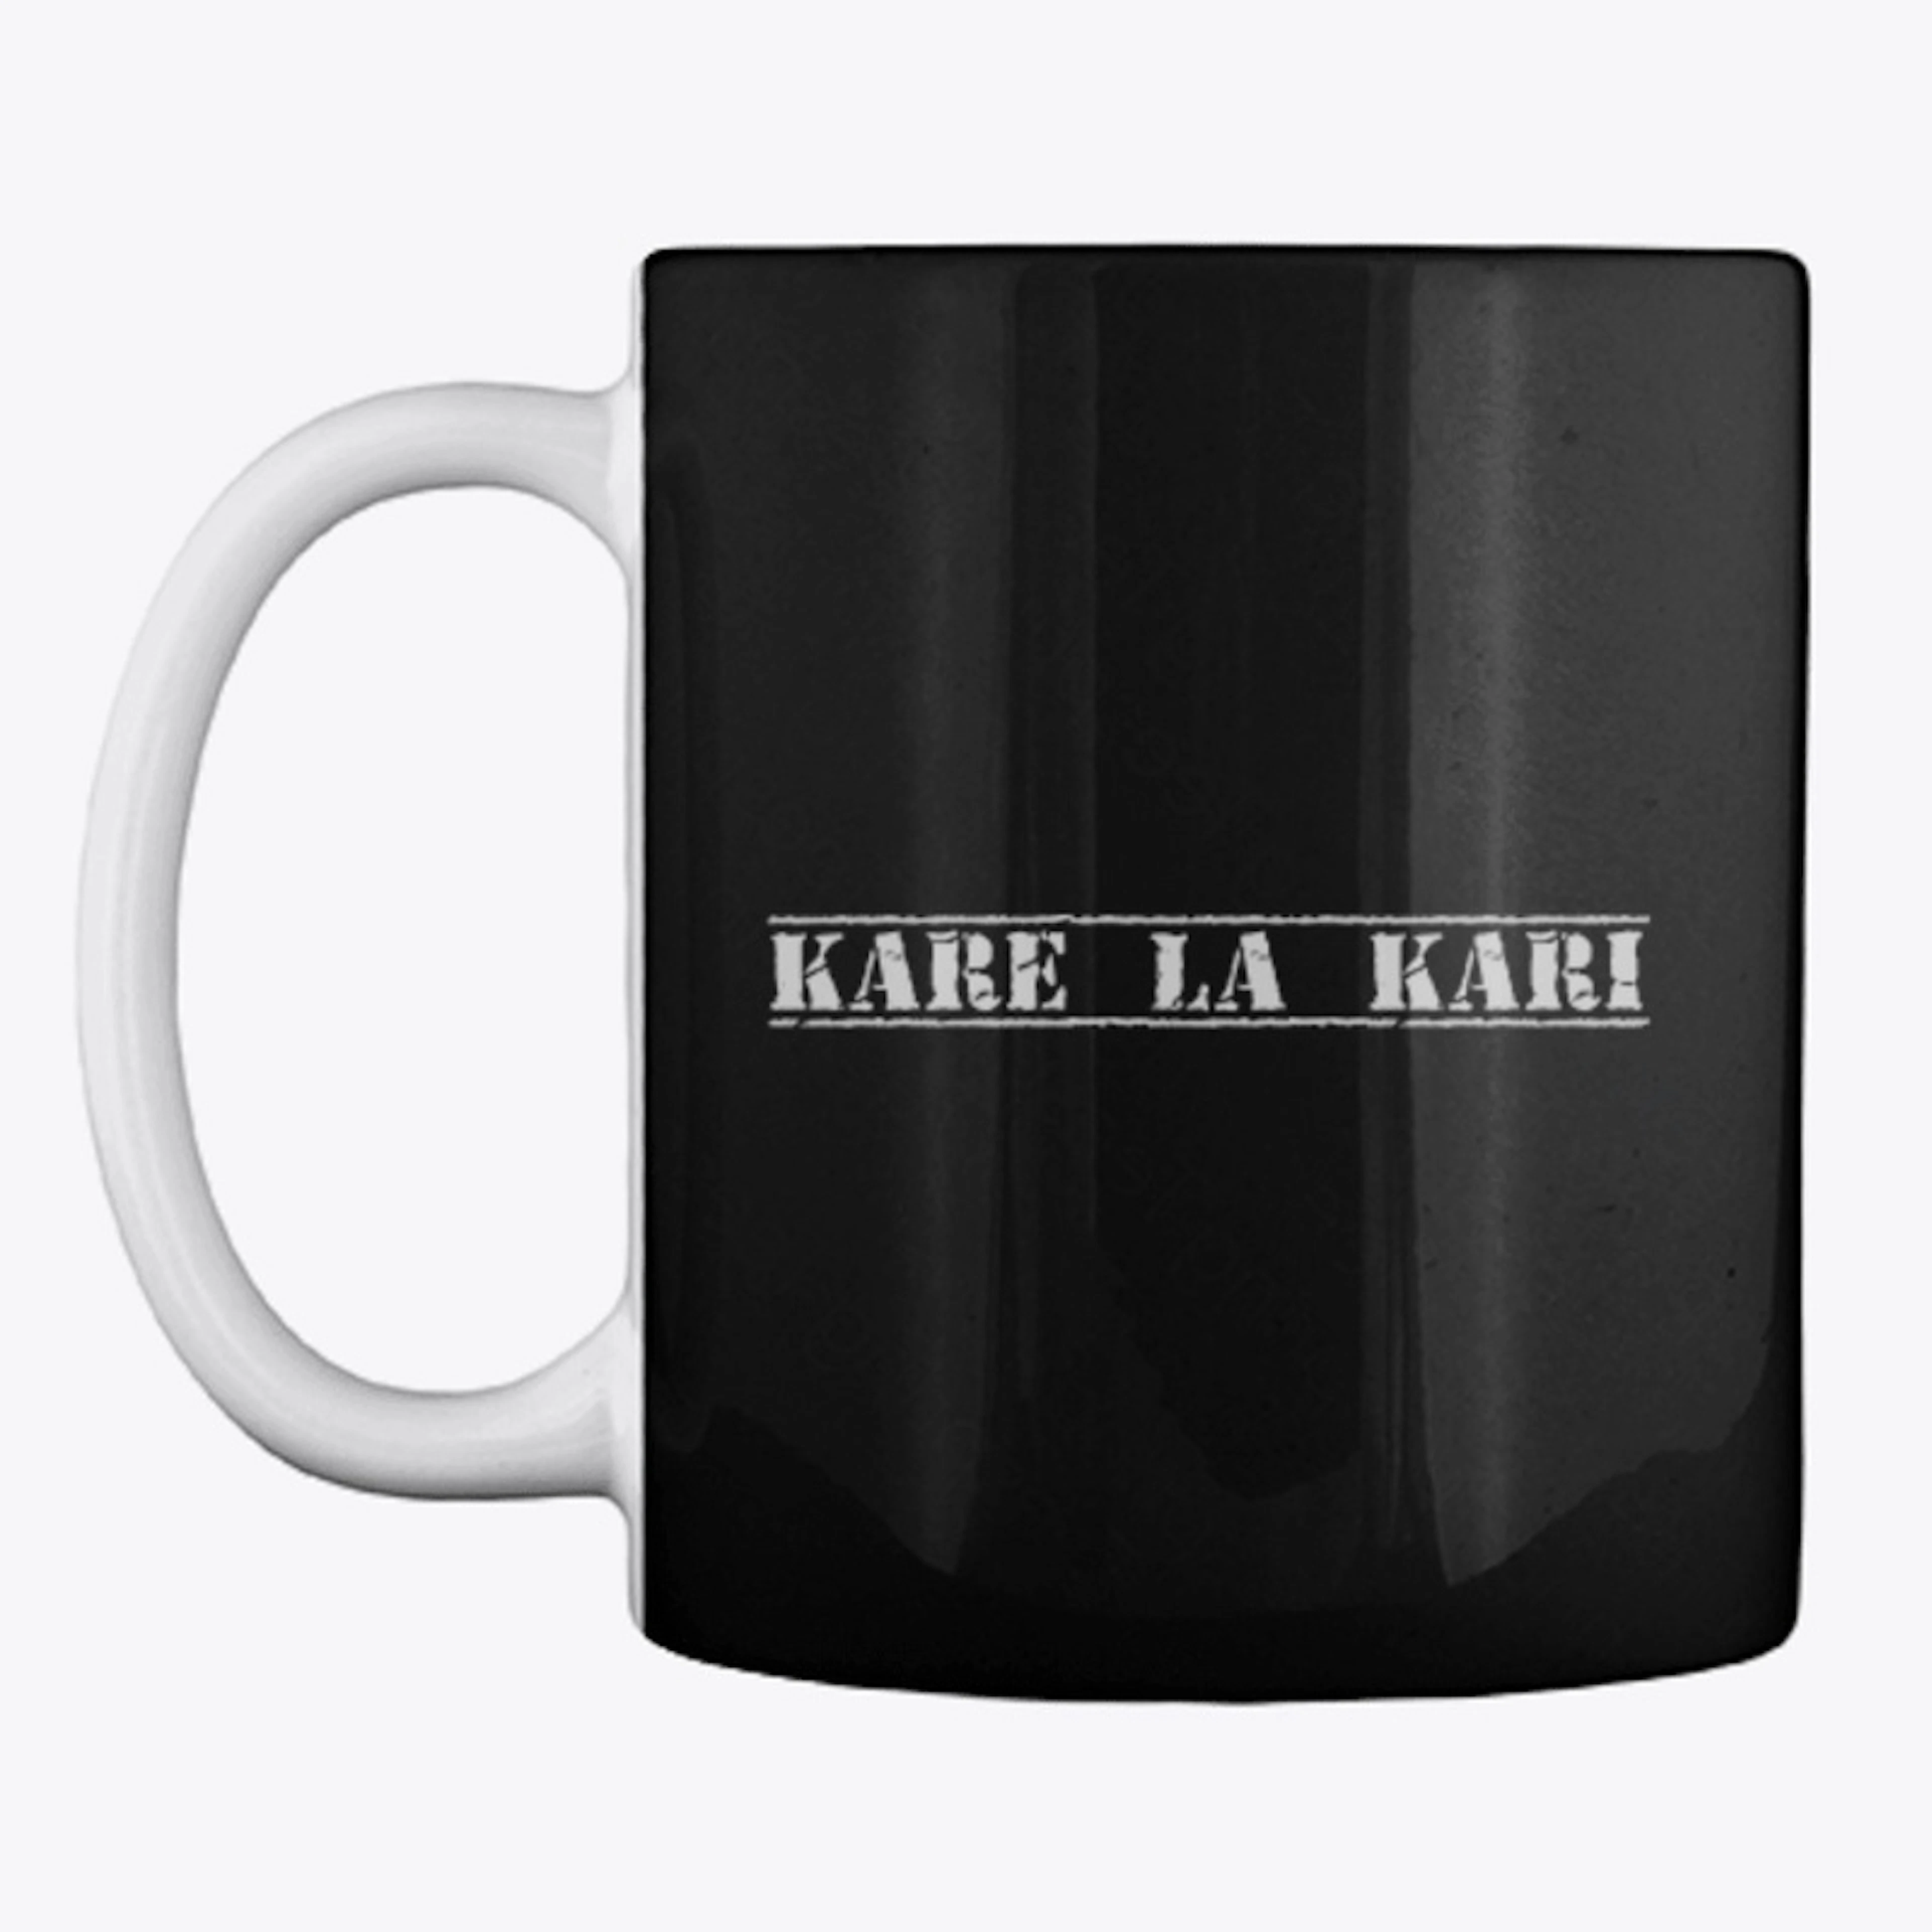 Kare La Kari